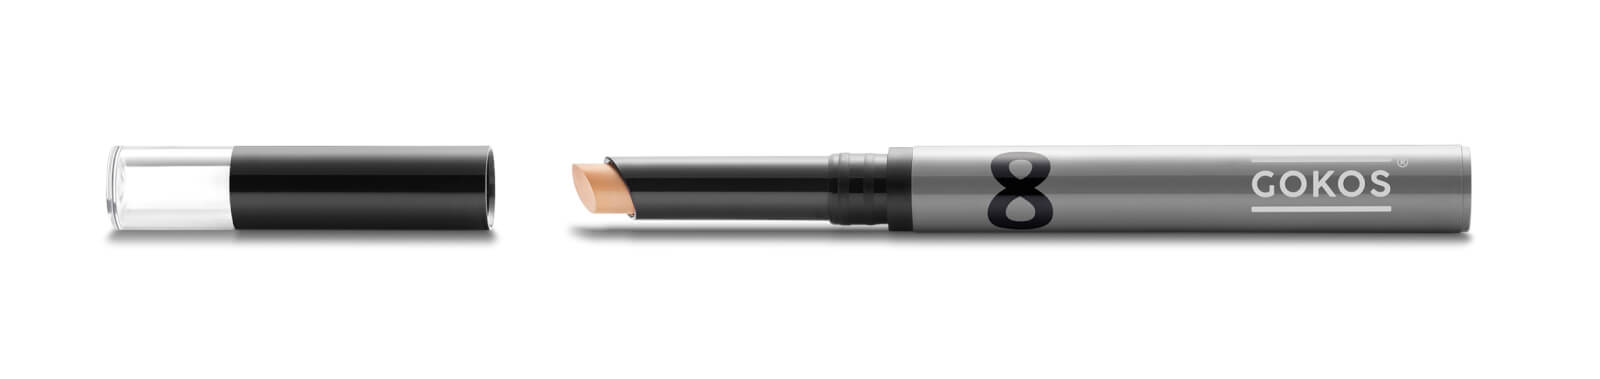 GOKOS - Beauty to go - Indie-Makeup-Brand mit Stiften 11